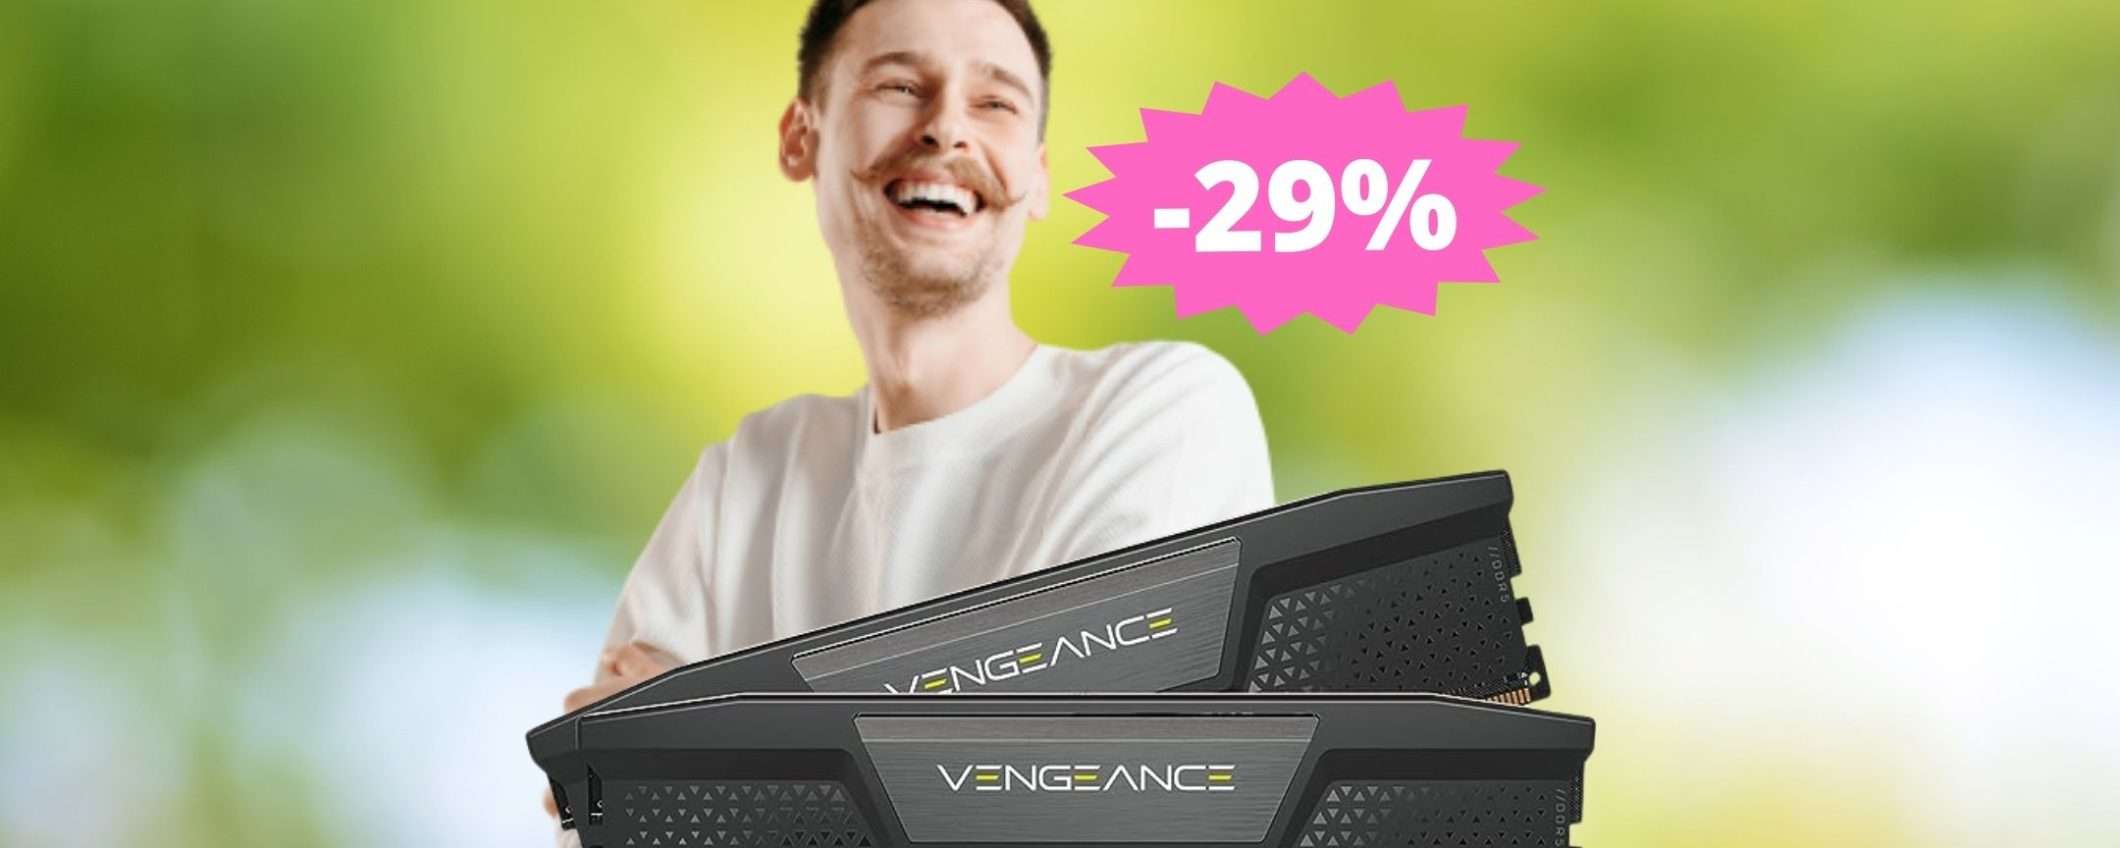 RAM CORSAIR VENGEANCE DDR5 da 32GB: SUPER sconto del 29%